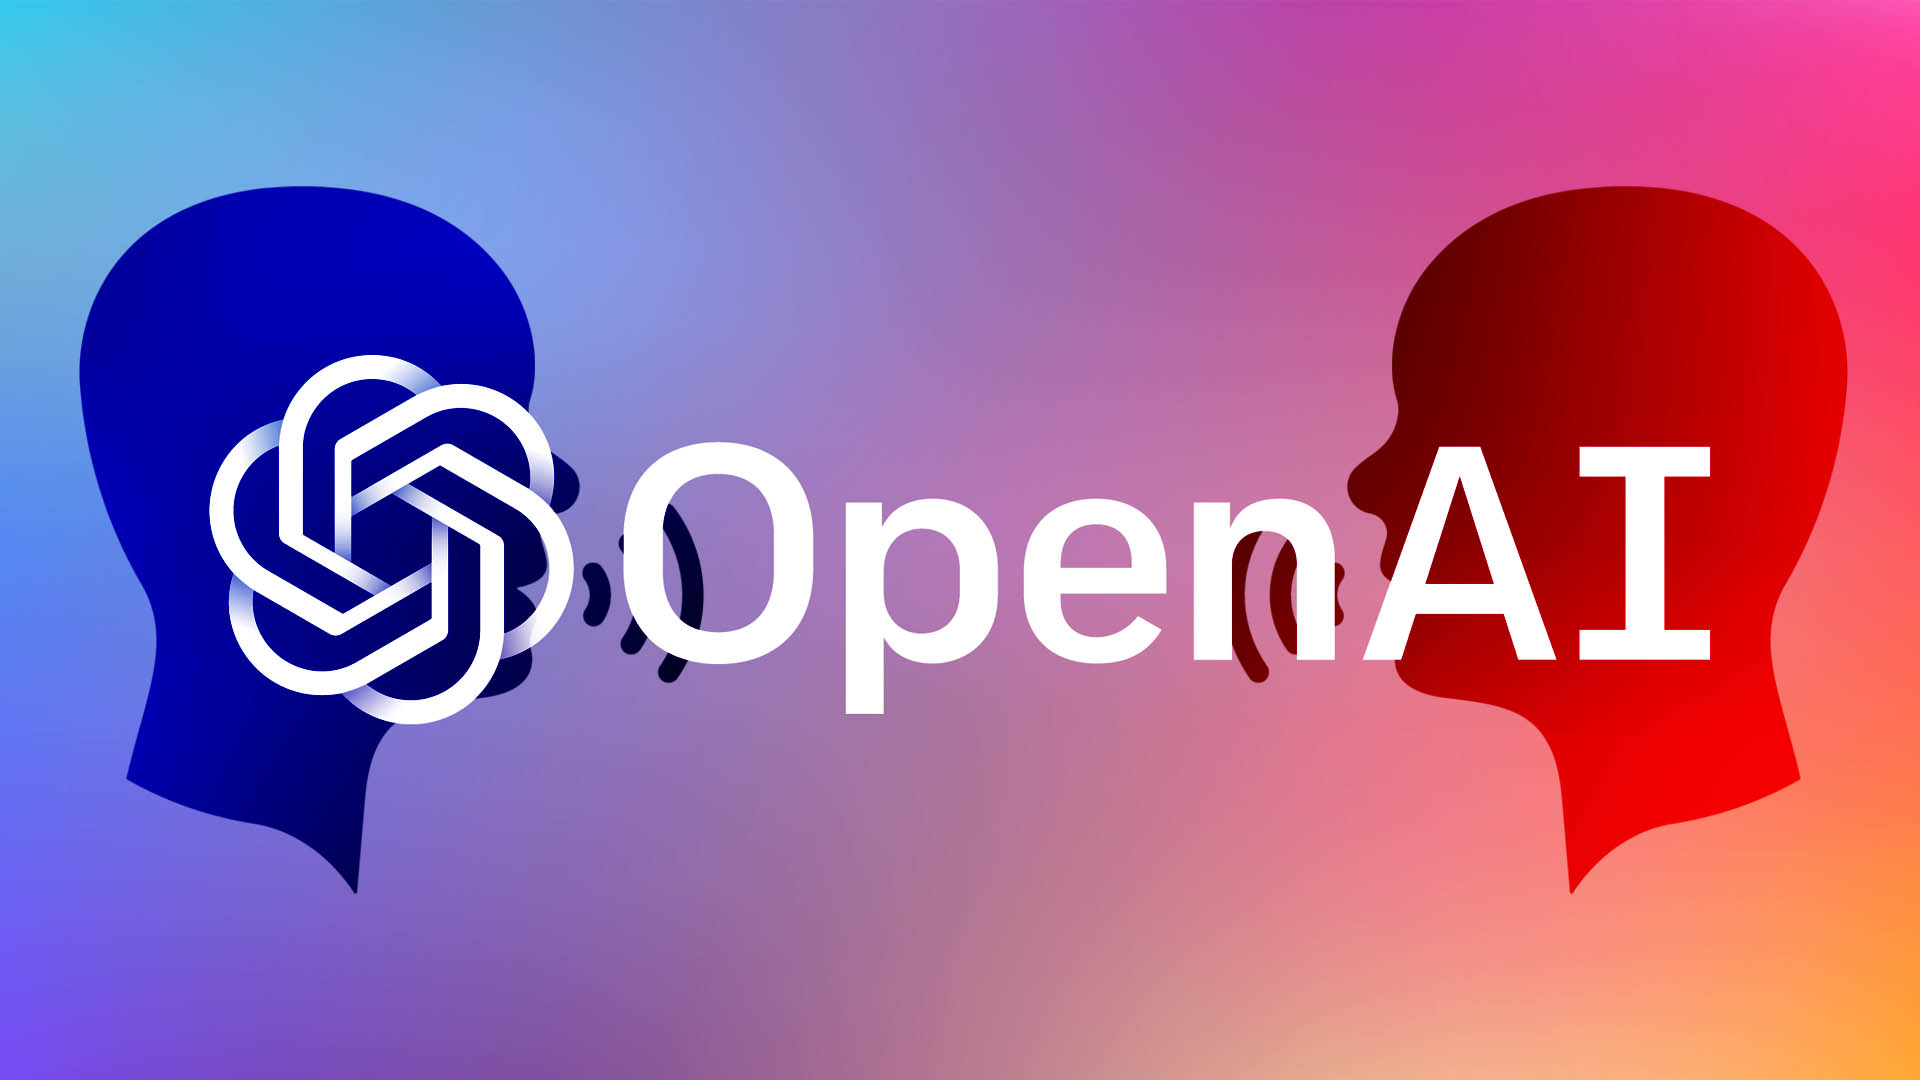 OpenAI nie robi wystarczająco dużo, aby zaradzić nieścisłościom w odpowiedziach ChatGPT - stwierdza unijny organ nadzorujący prywatność